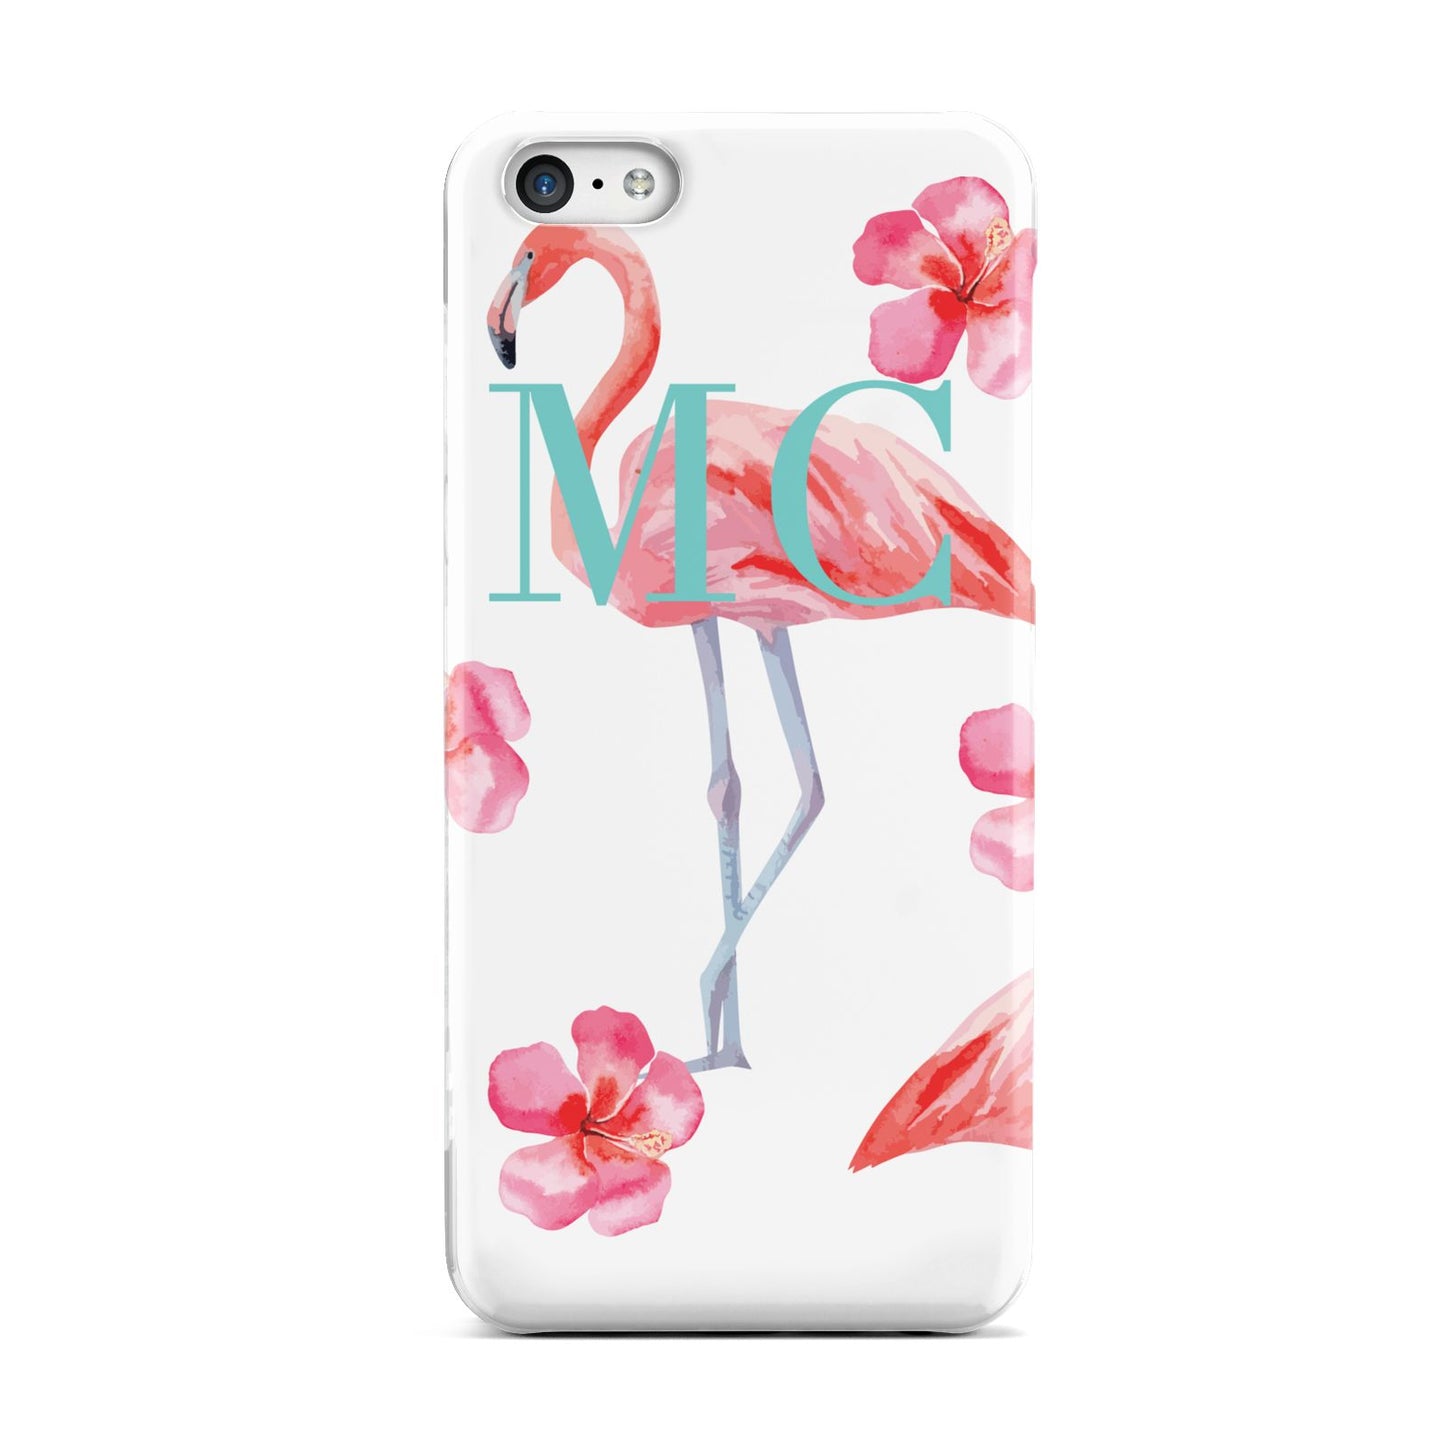 Personalised Initials Flamingo 3 Apple iPhone 5c Case